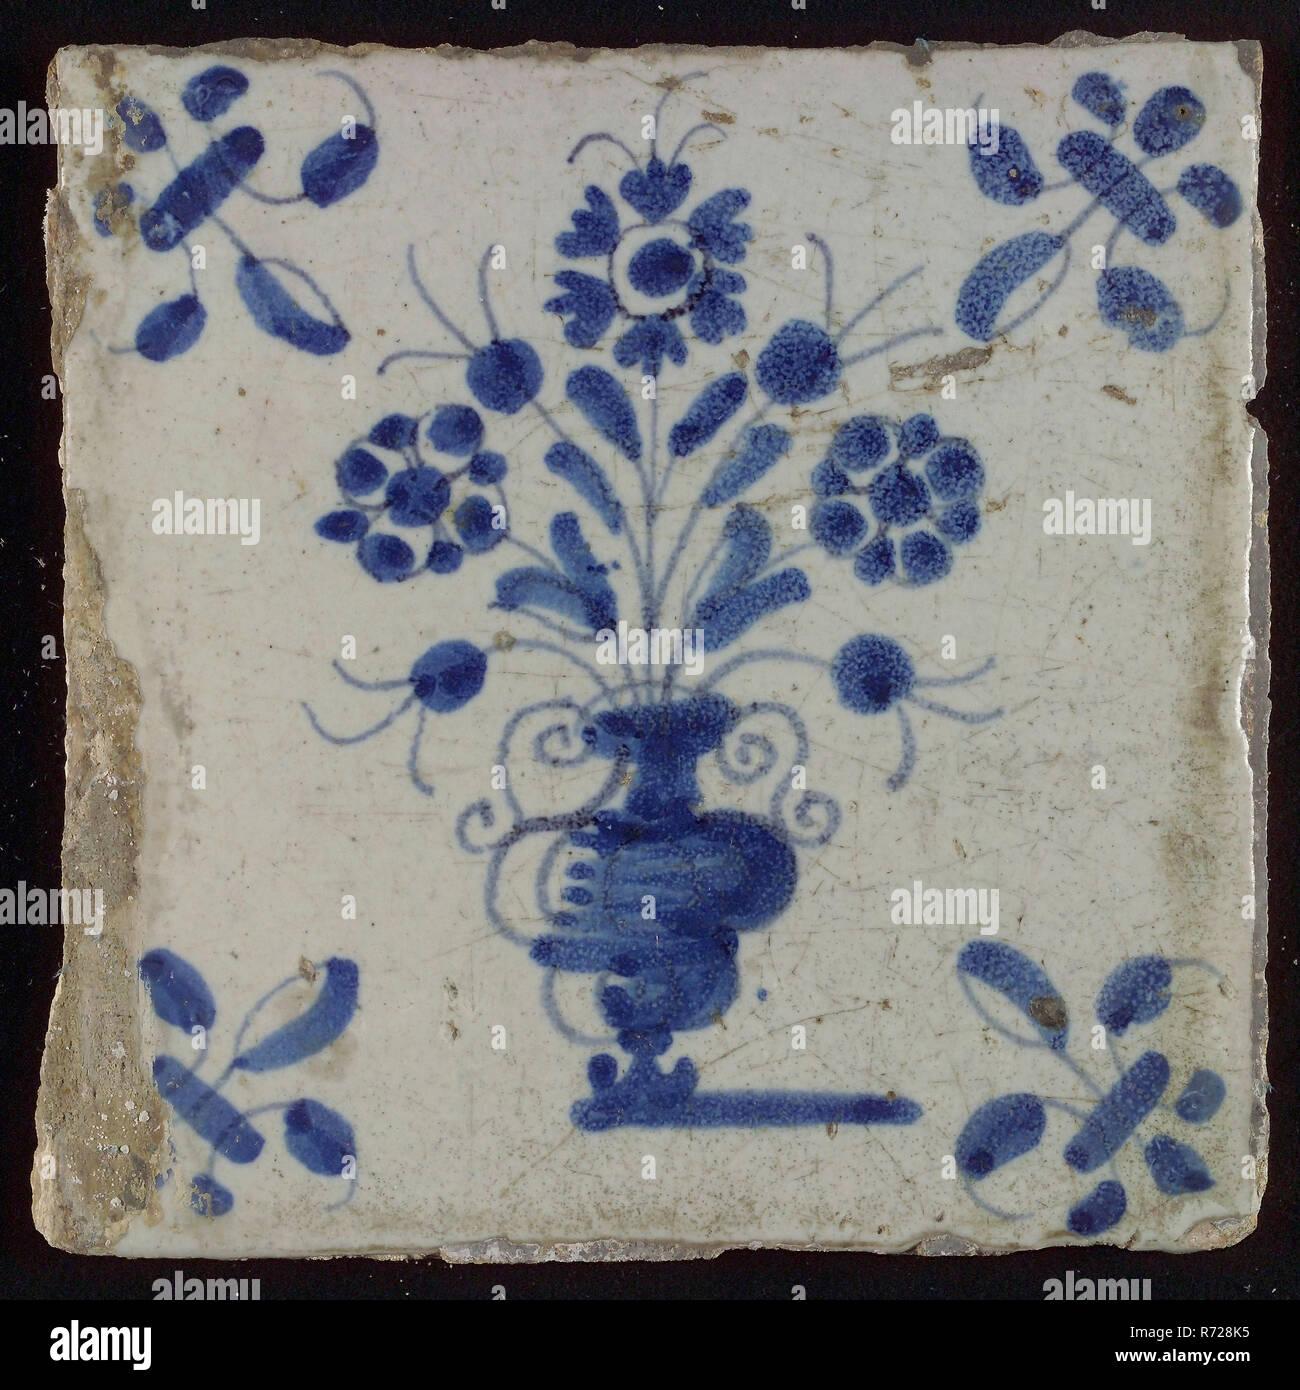 Mosaico, maceta en azul sobre blanco, esquina motif lily, azulejo de pared escultura mosaico de cerámica glaseada de barro cocido pintado vidriado 2x Foto de stock